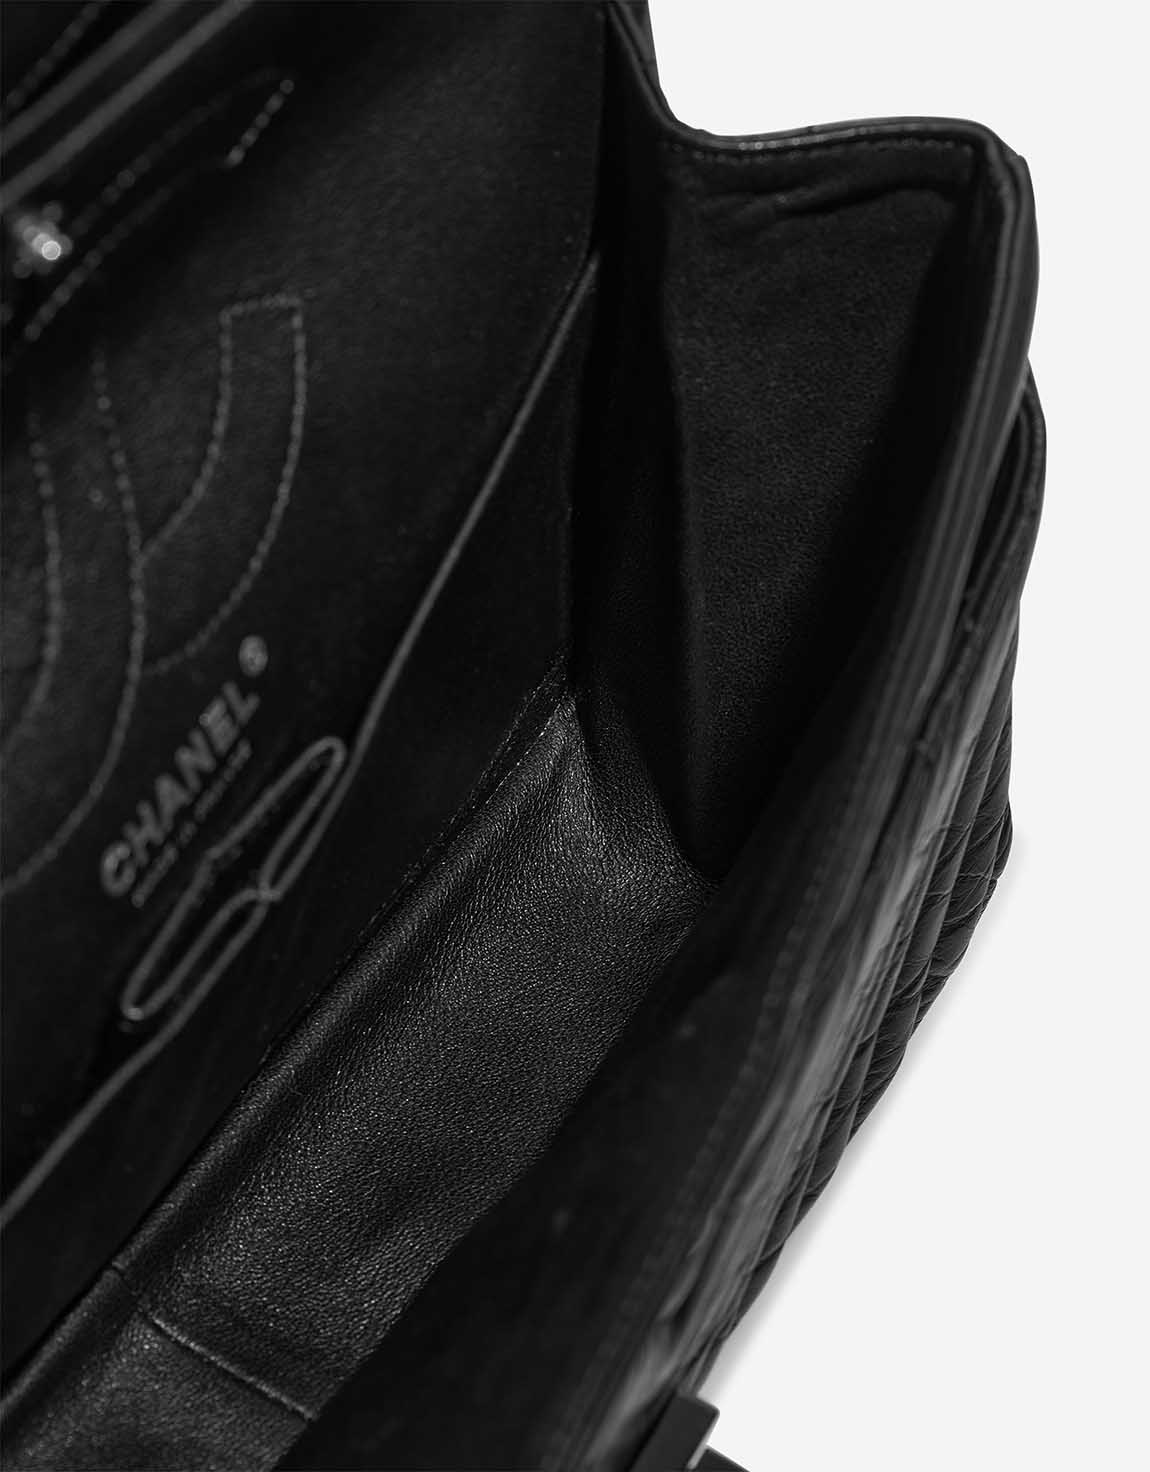 Chanel 2.55 Reissue 226 Aged Calf Black Inside | Sell your designer bag